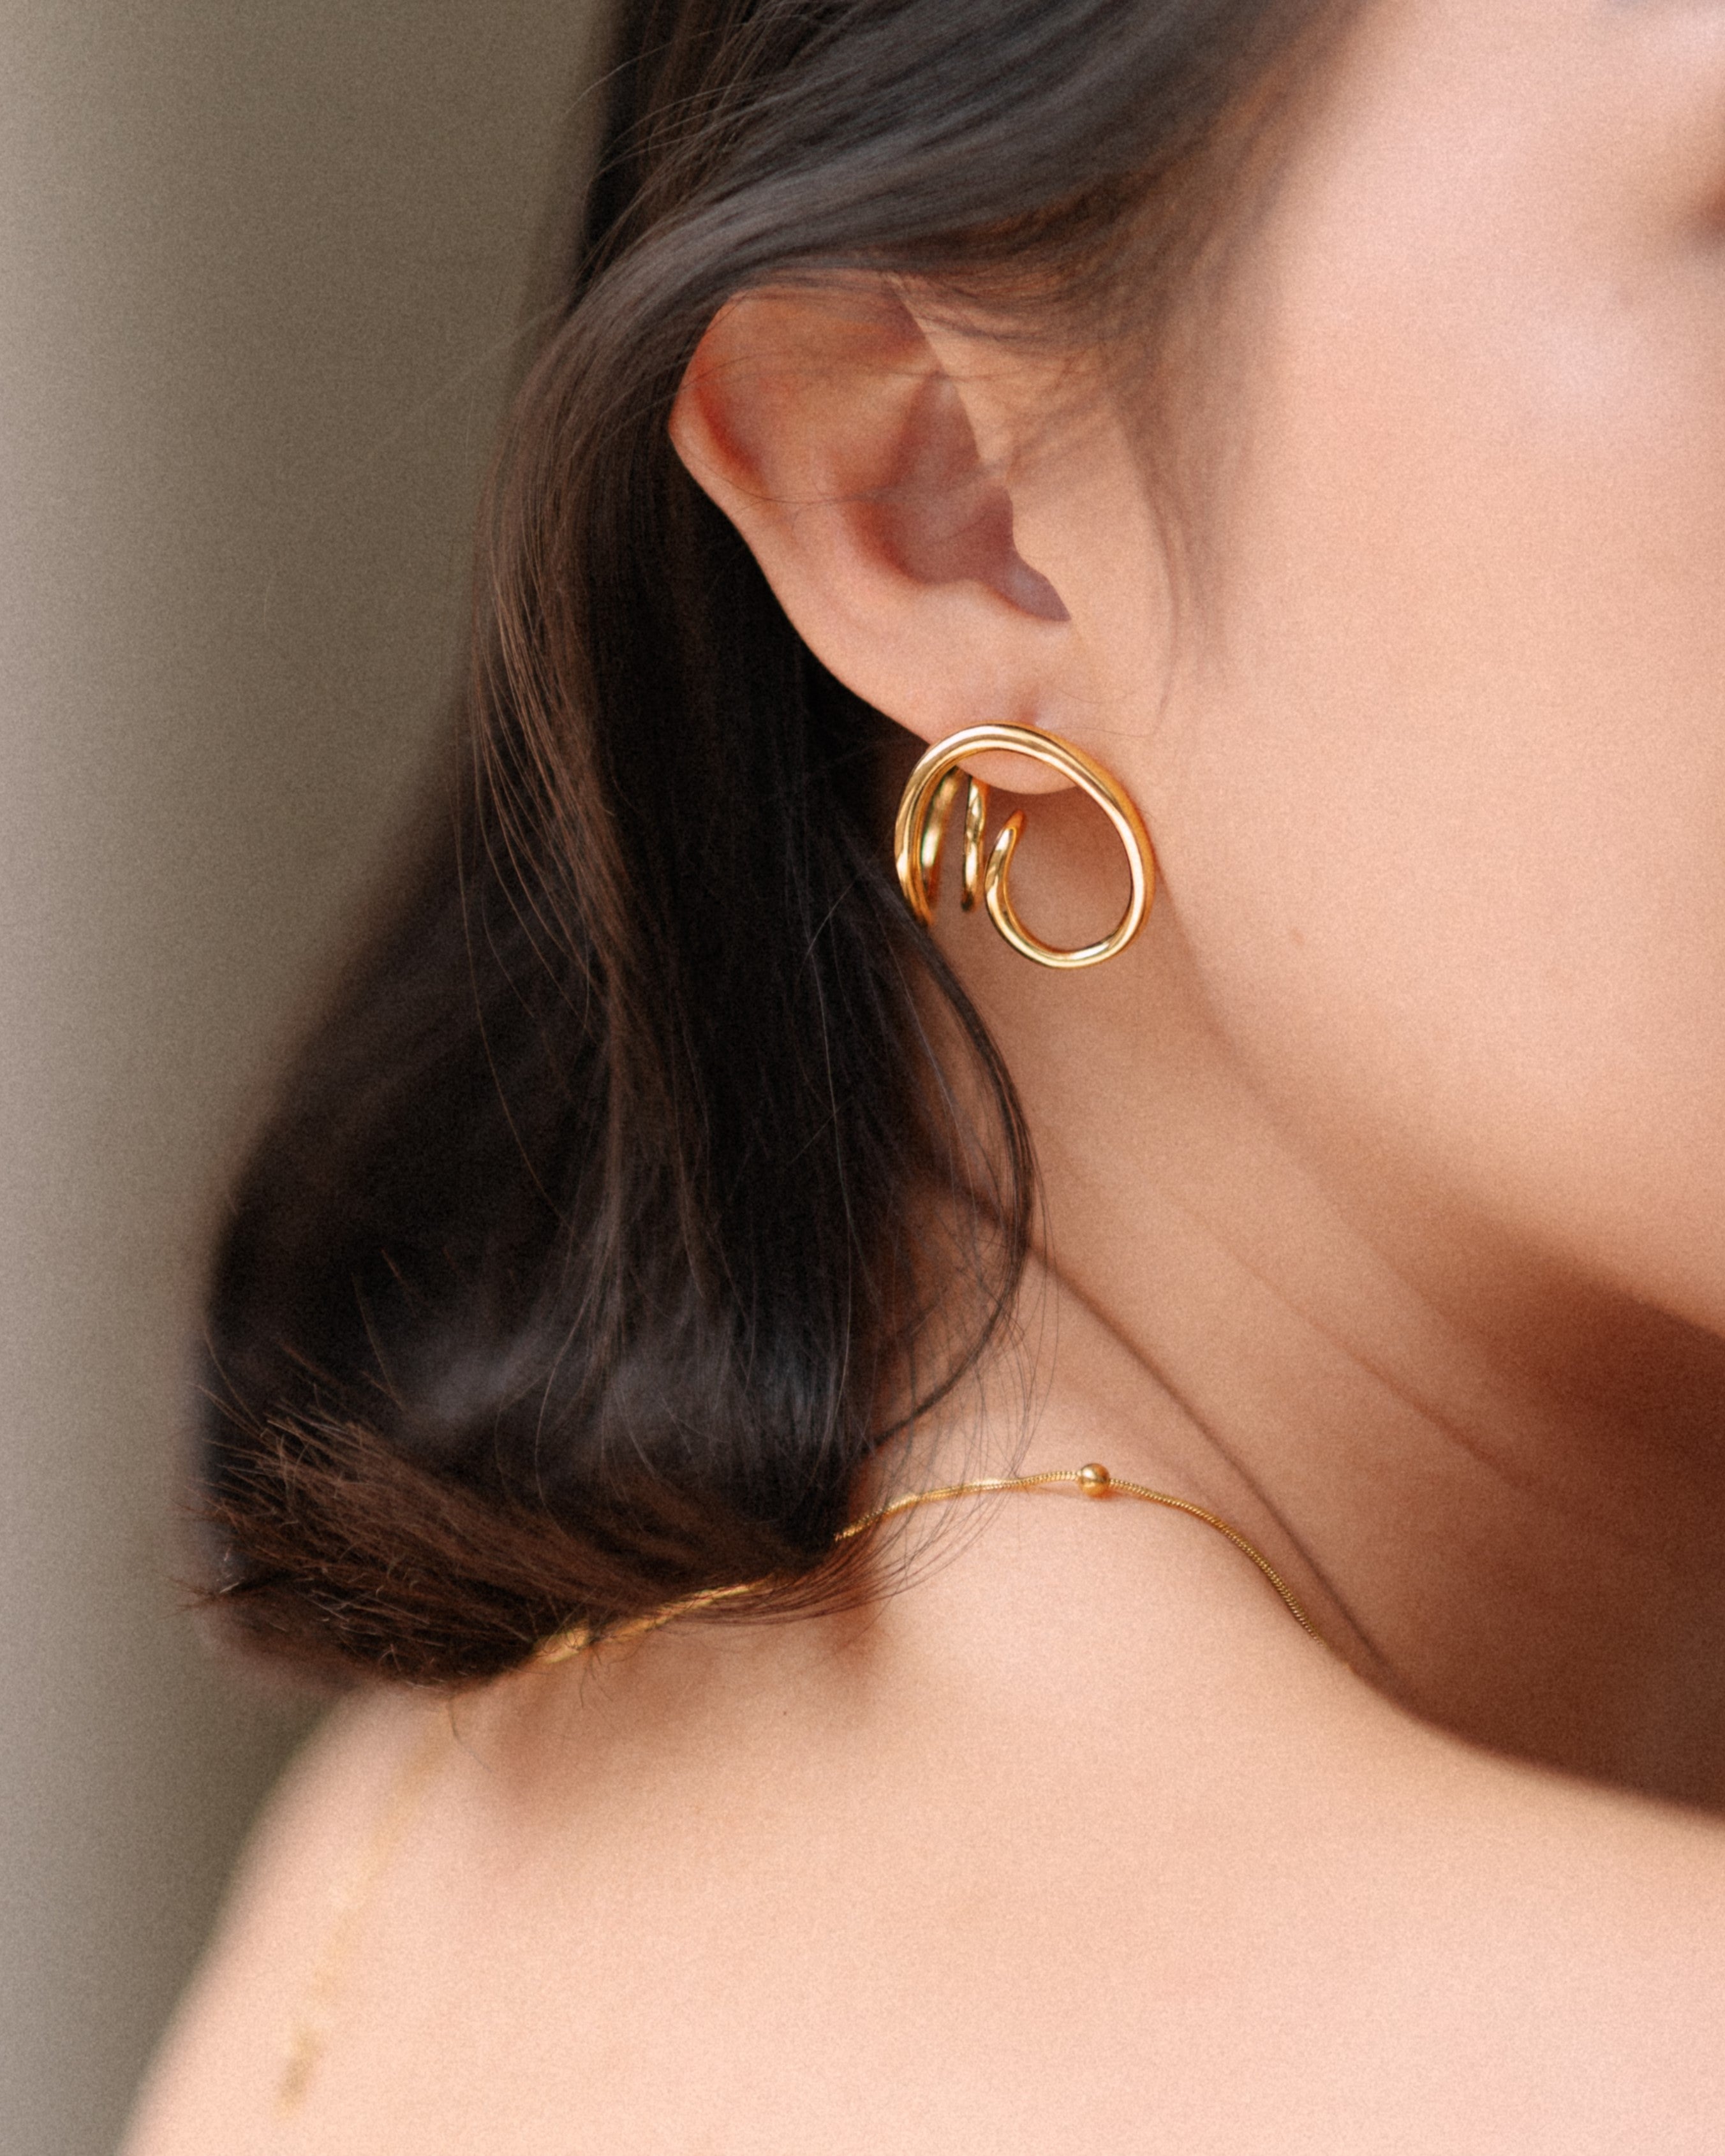 Soft swirl earrings